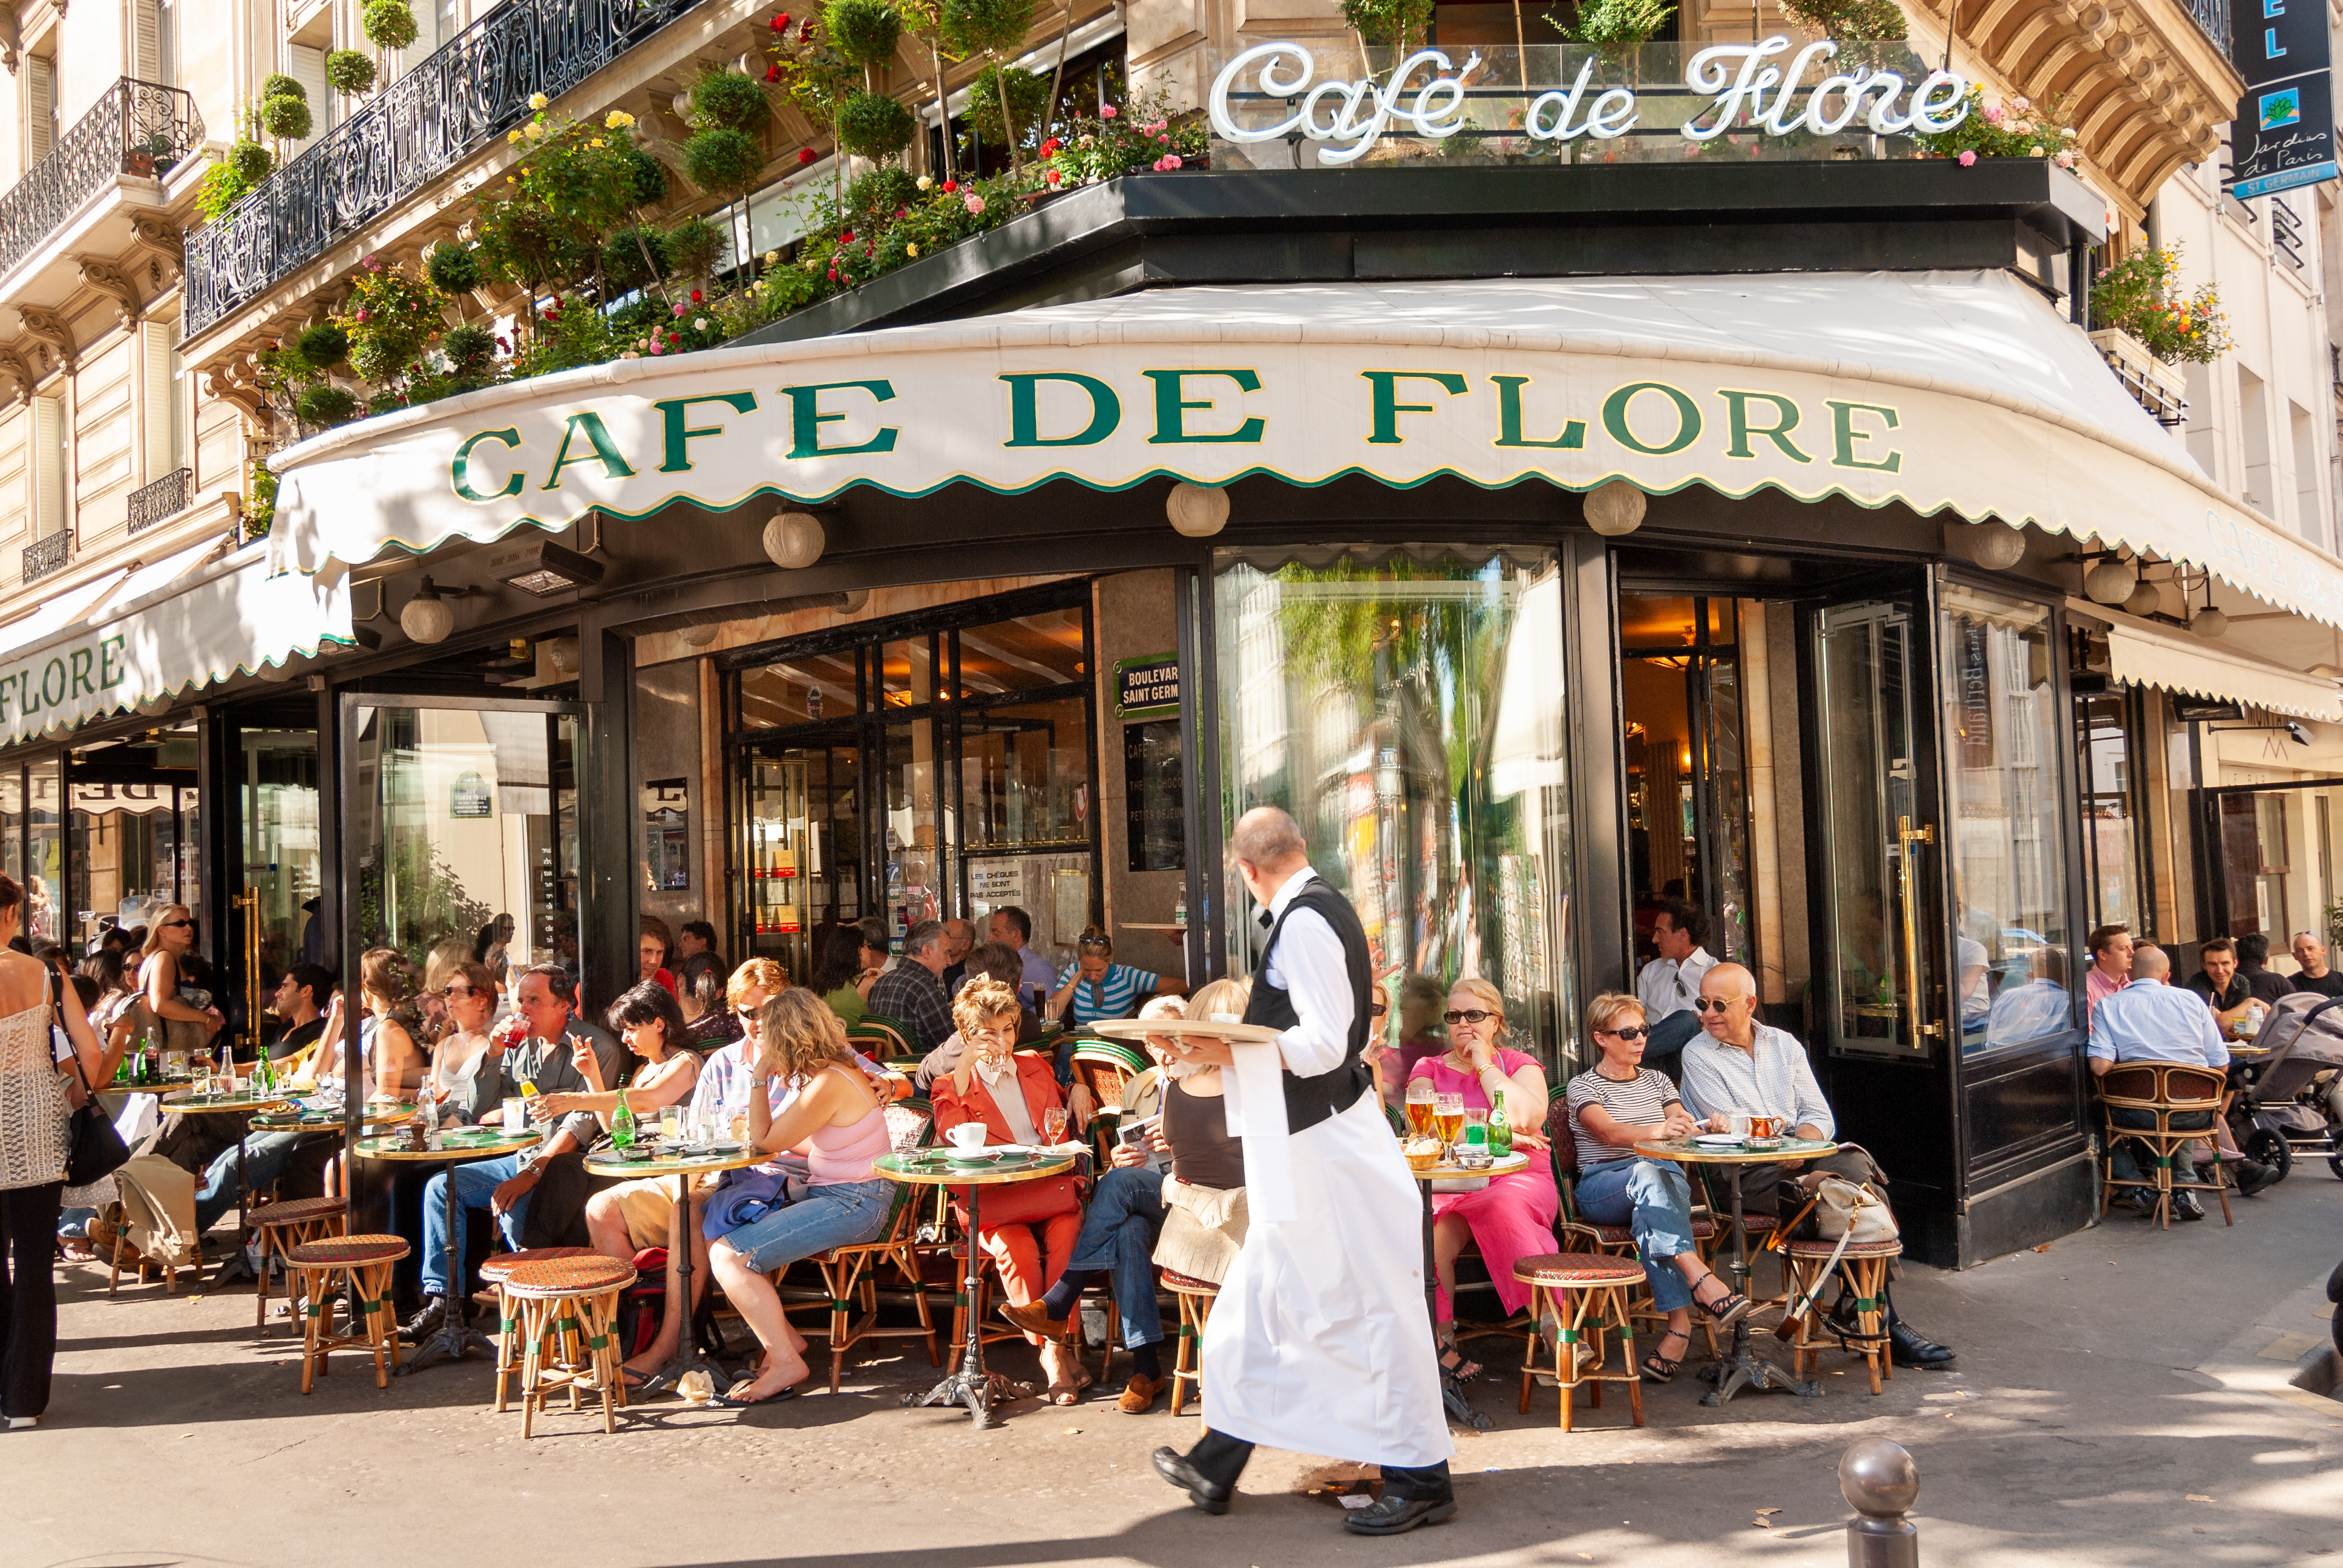 Café de Flore in the heart of Saint Germain des Prés